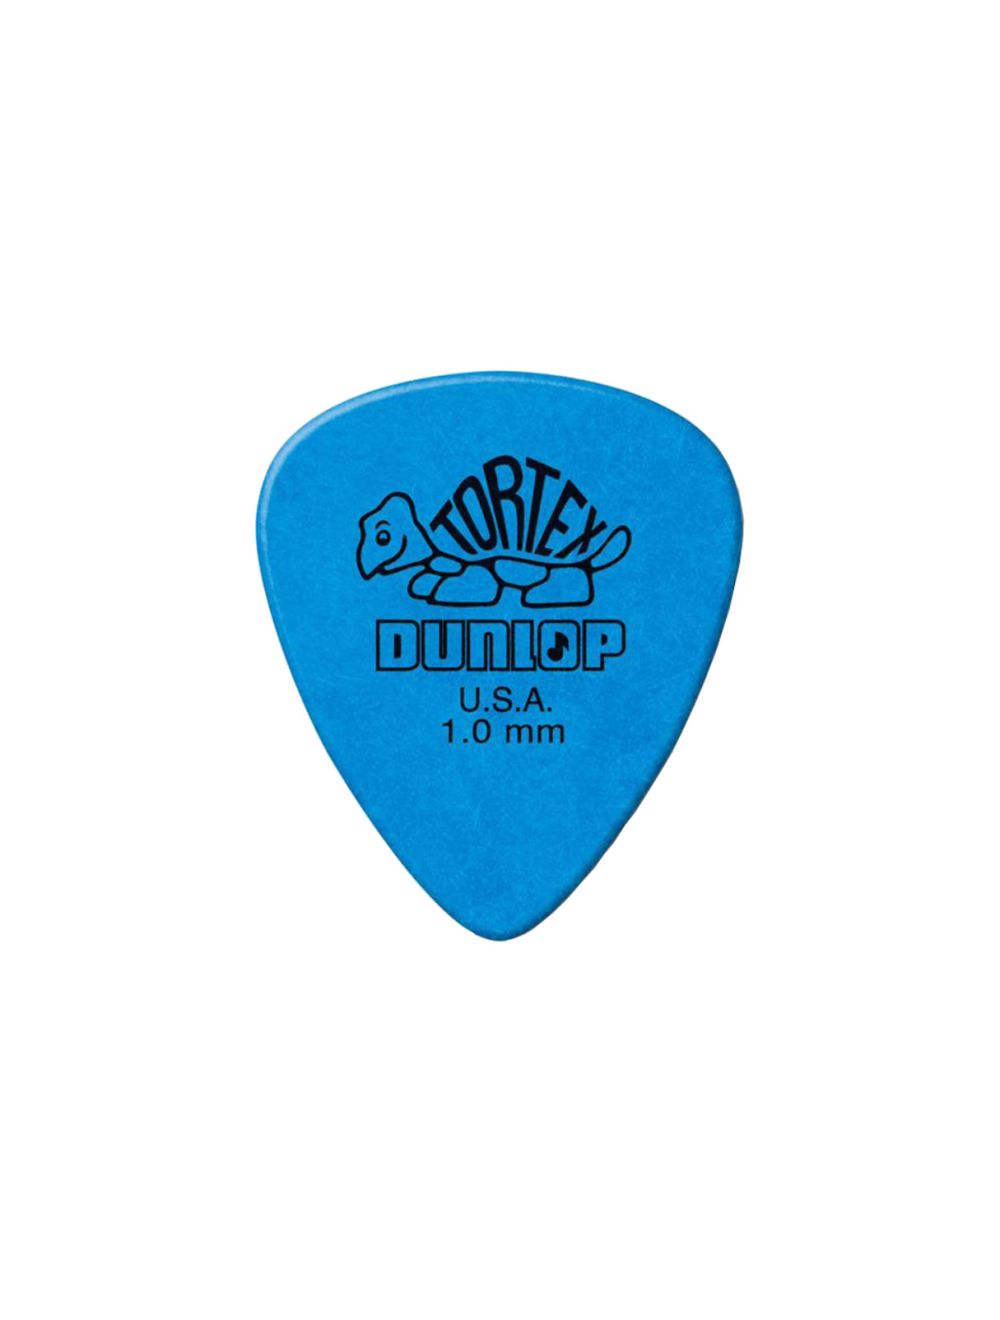 Dunlop Tortex Standard 1.0mm Blue Guitar Pick 12 Pack